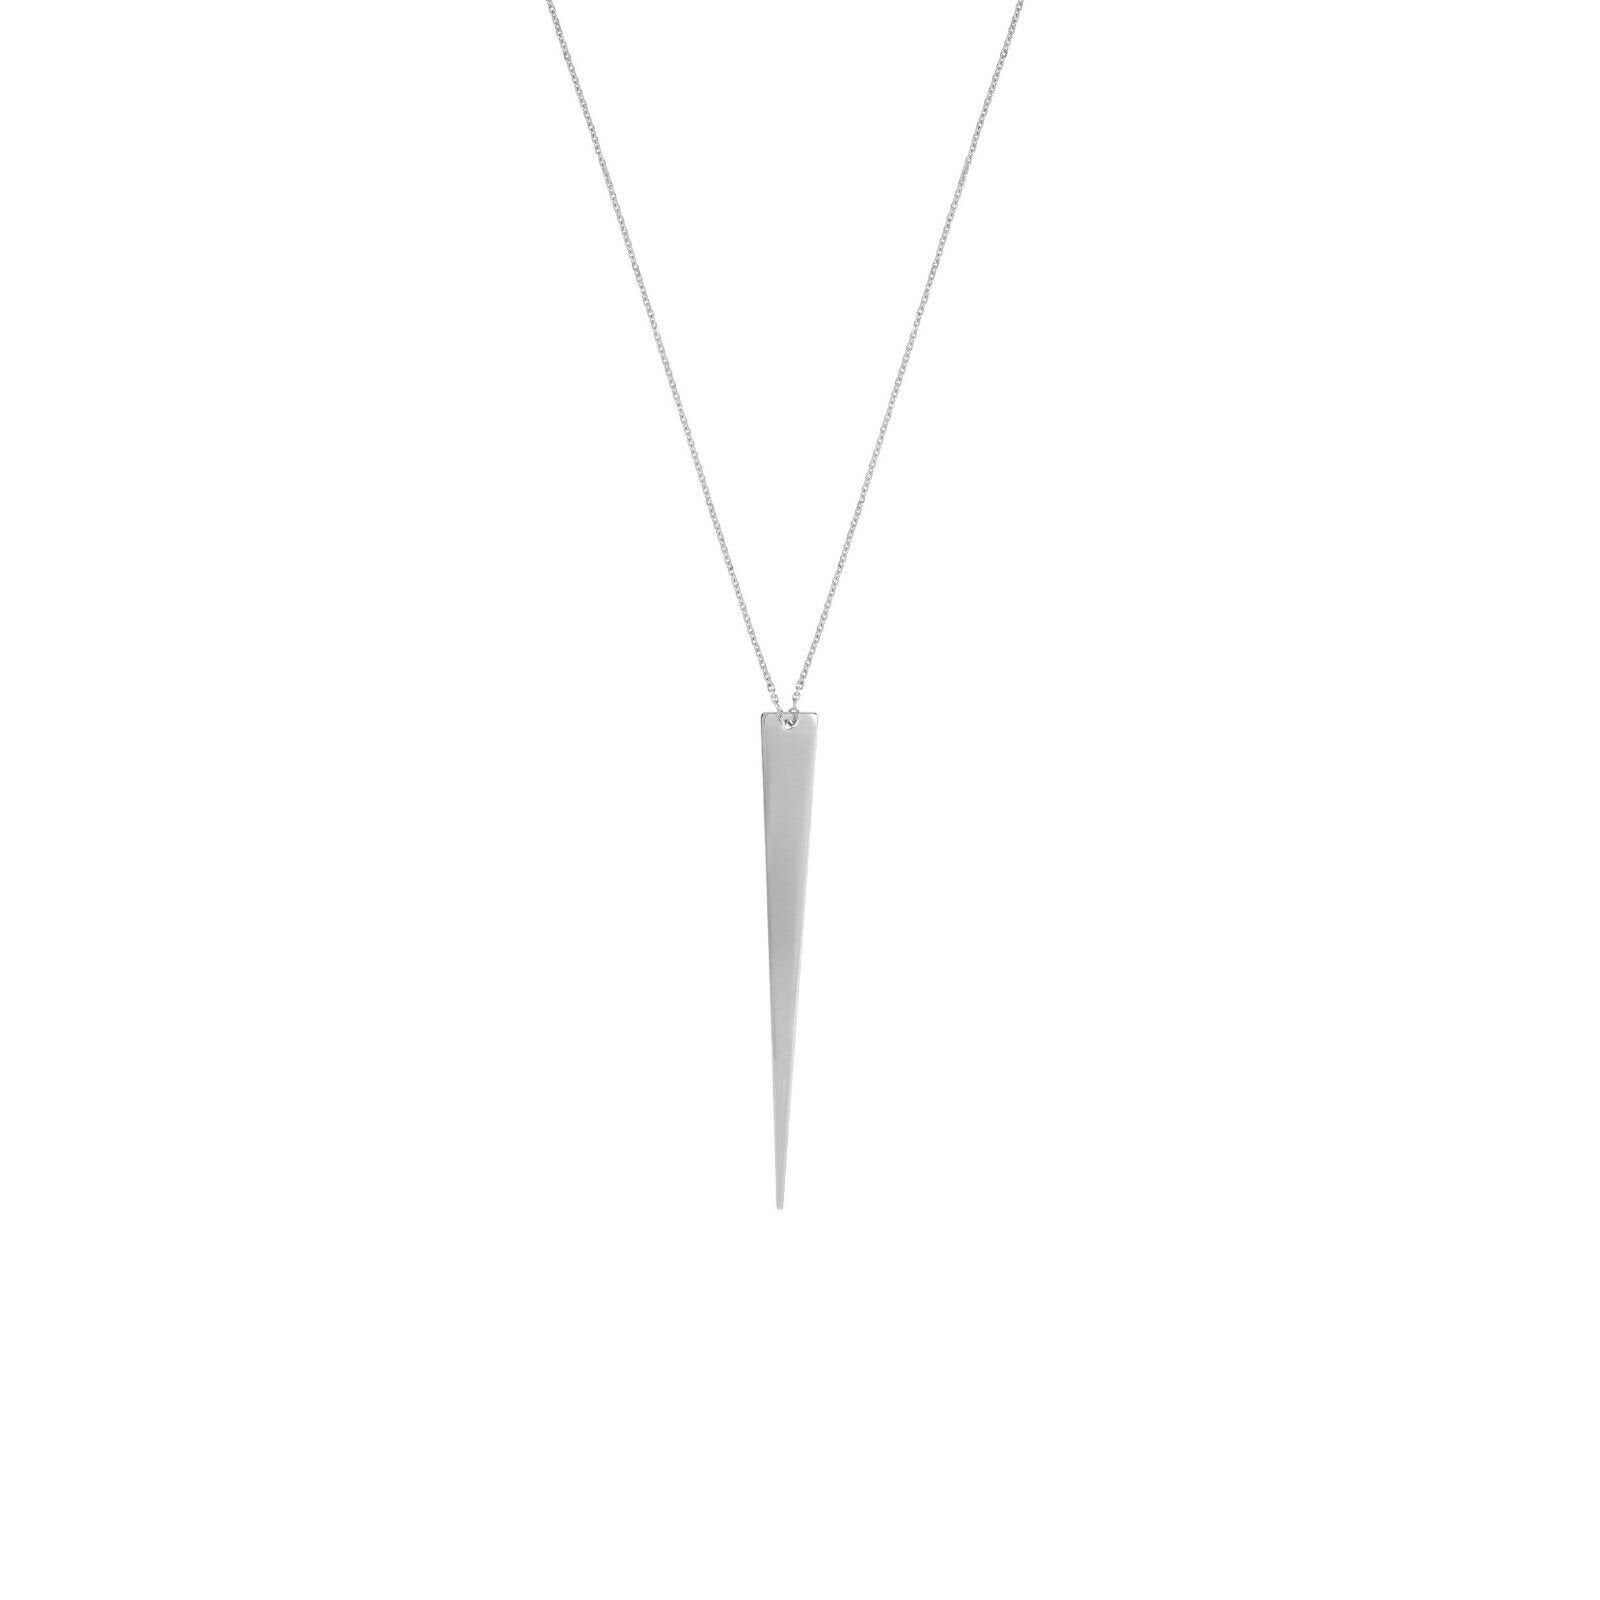 Jagger Längliche Dreieck Verstellbare Kette Halskette Echt 14K Weiß Gold 16+2" von BayamJewelry